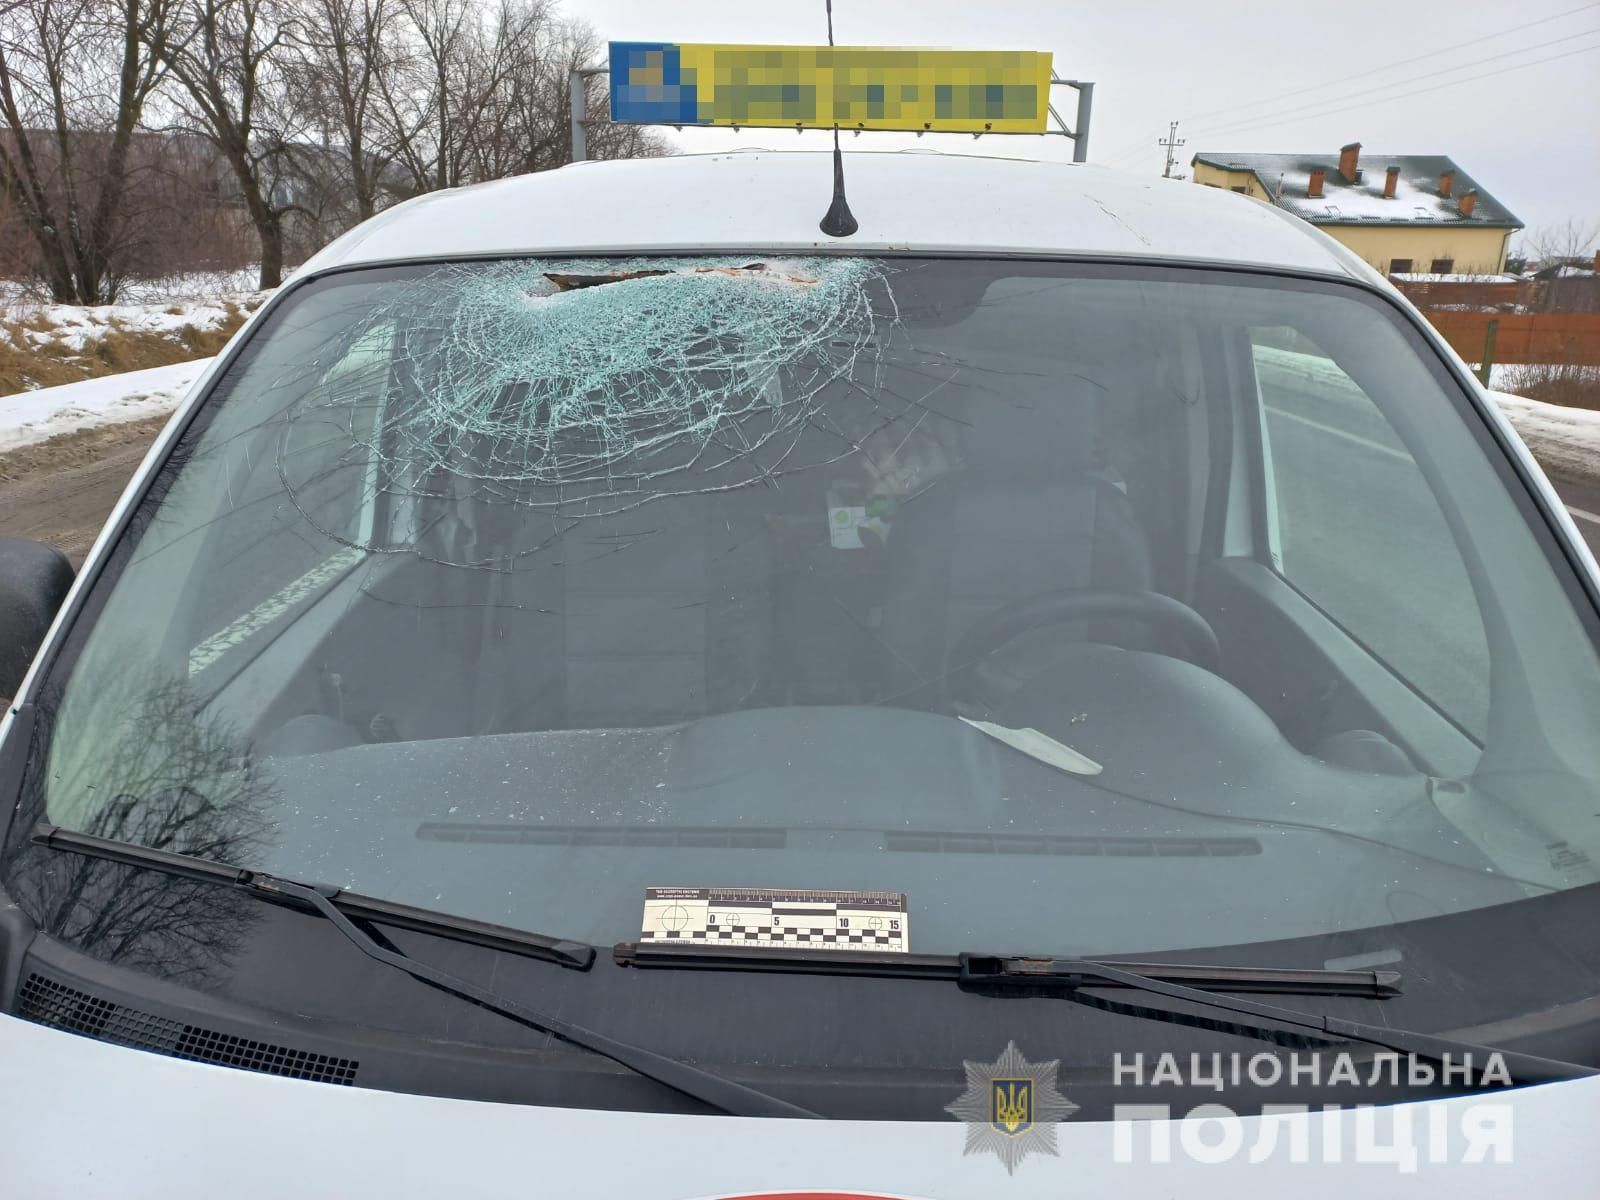 Тент взлетел и разбил ветровое стекло: подробности ужасного ДТП с грузовиком возле Львова